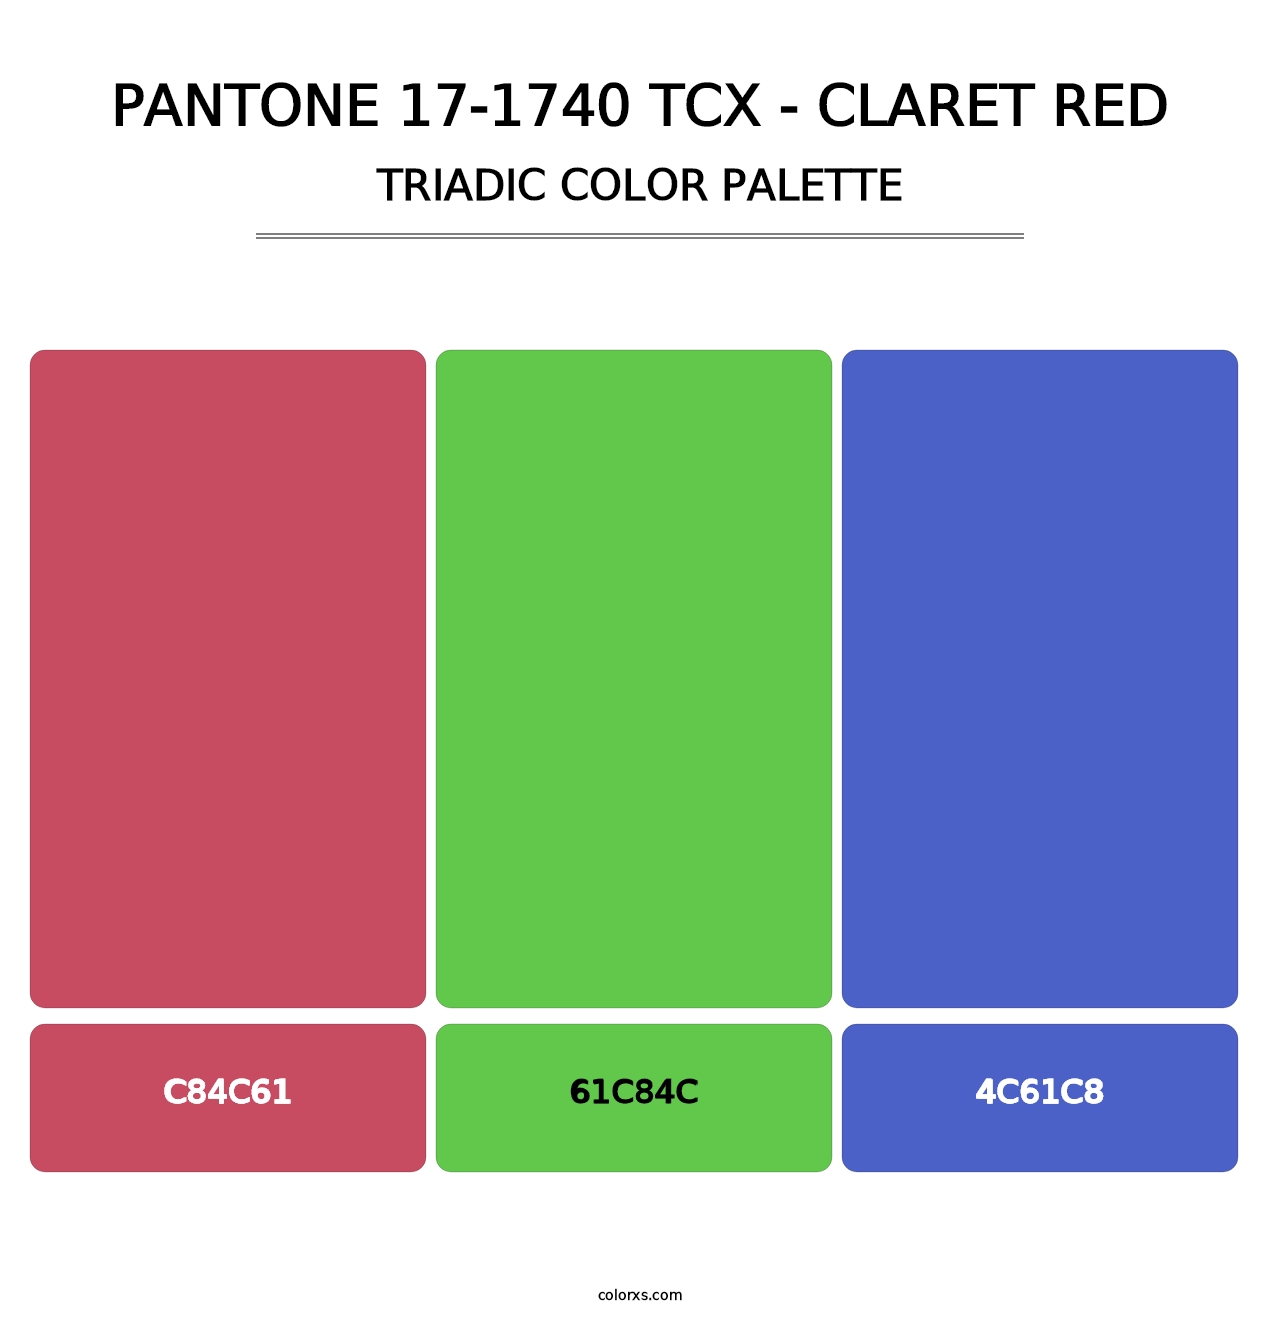 PANTONE 17-1740 TCX - Claret Red - Triadic Color Palette